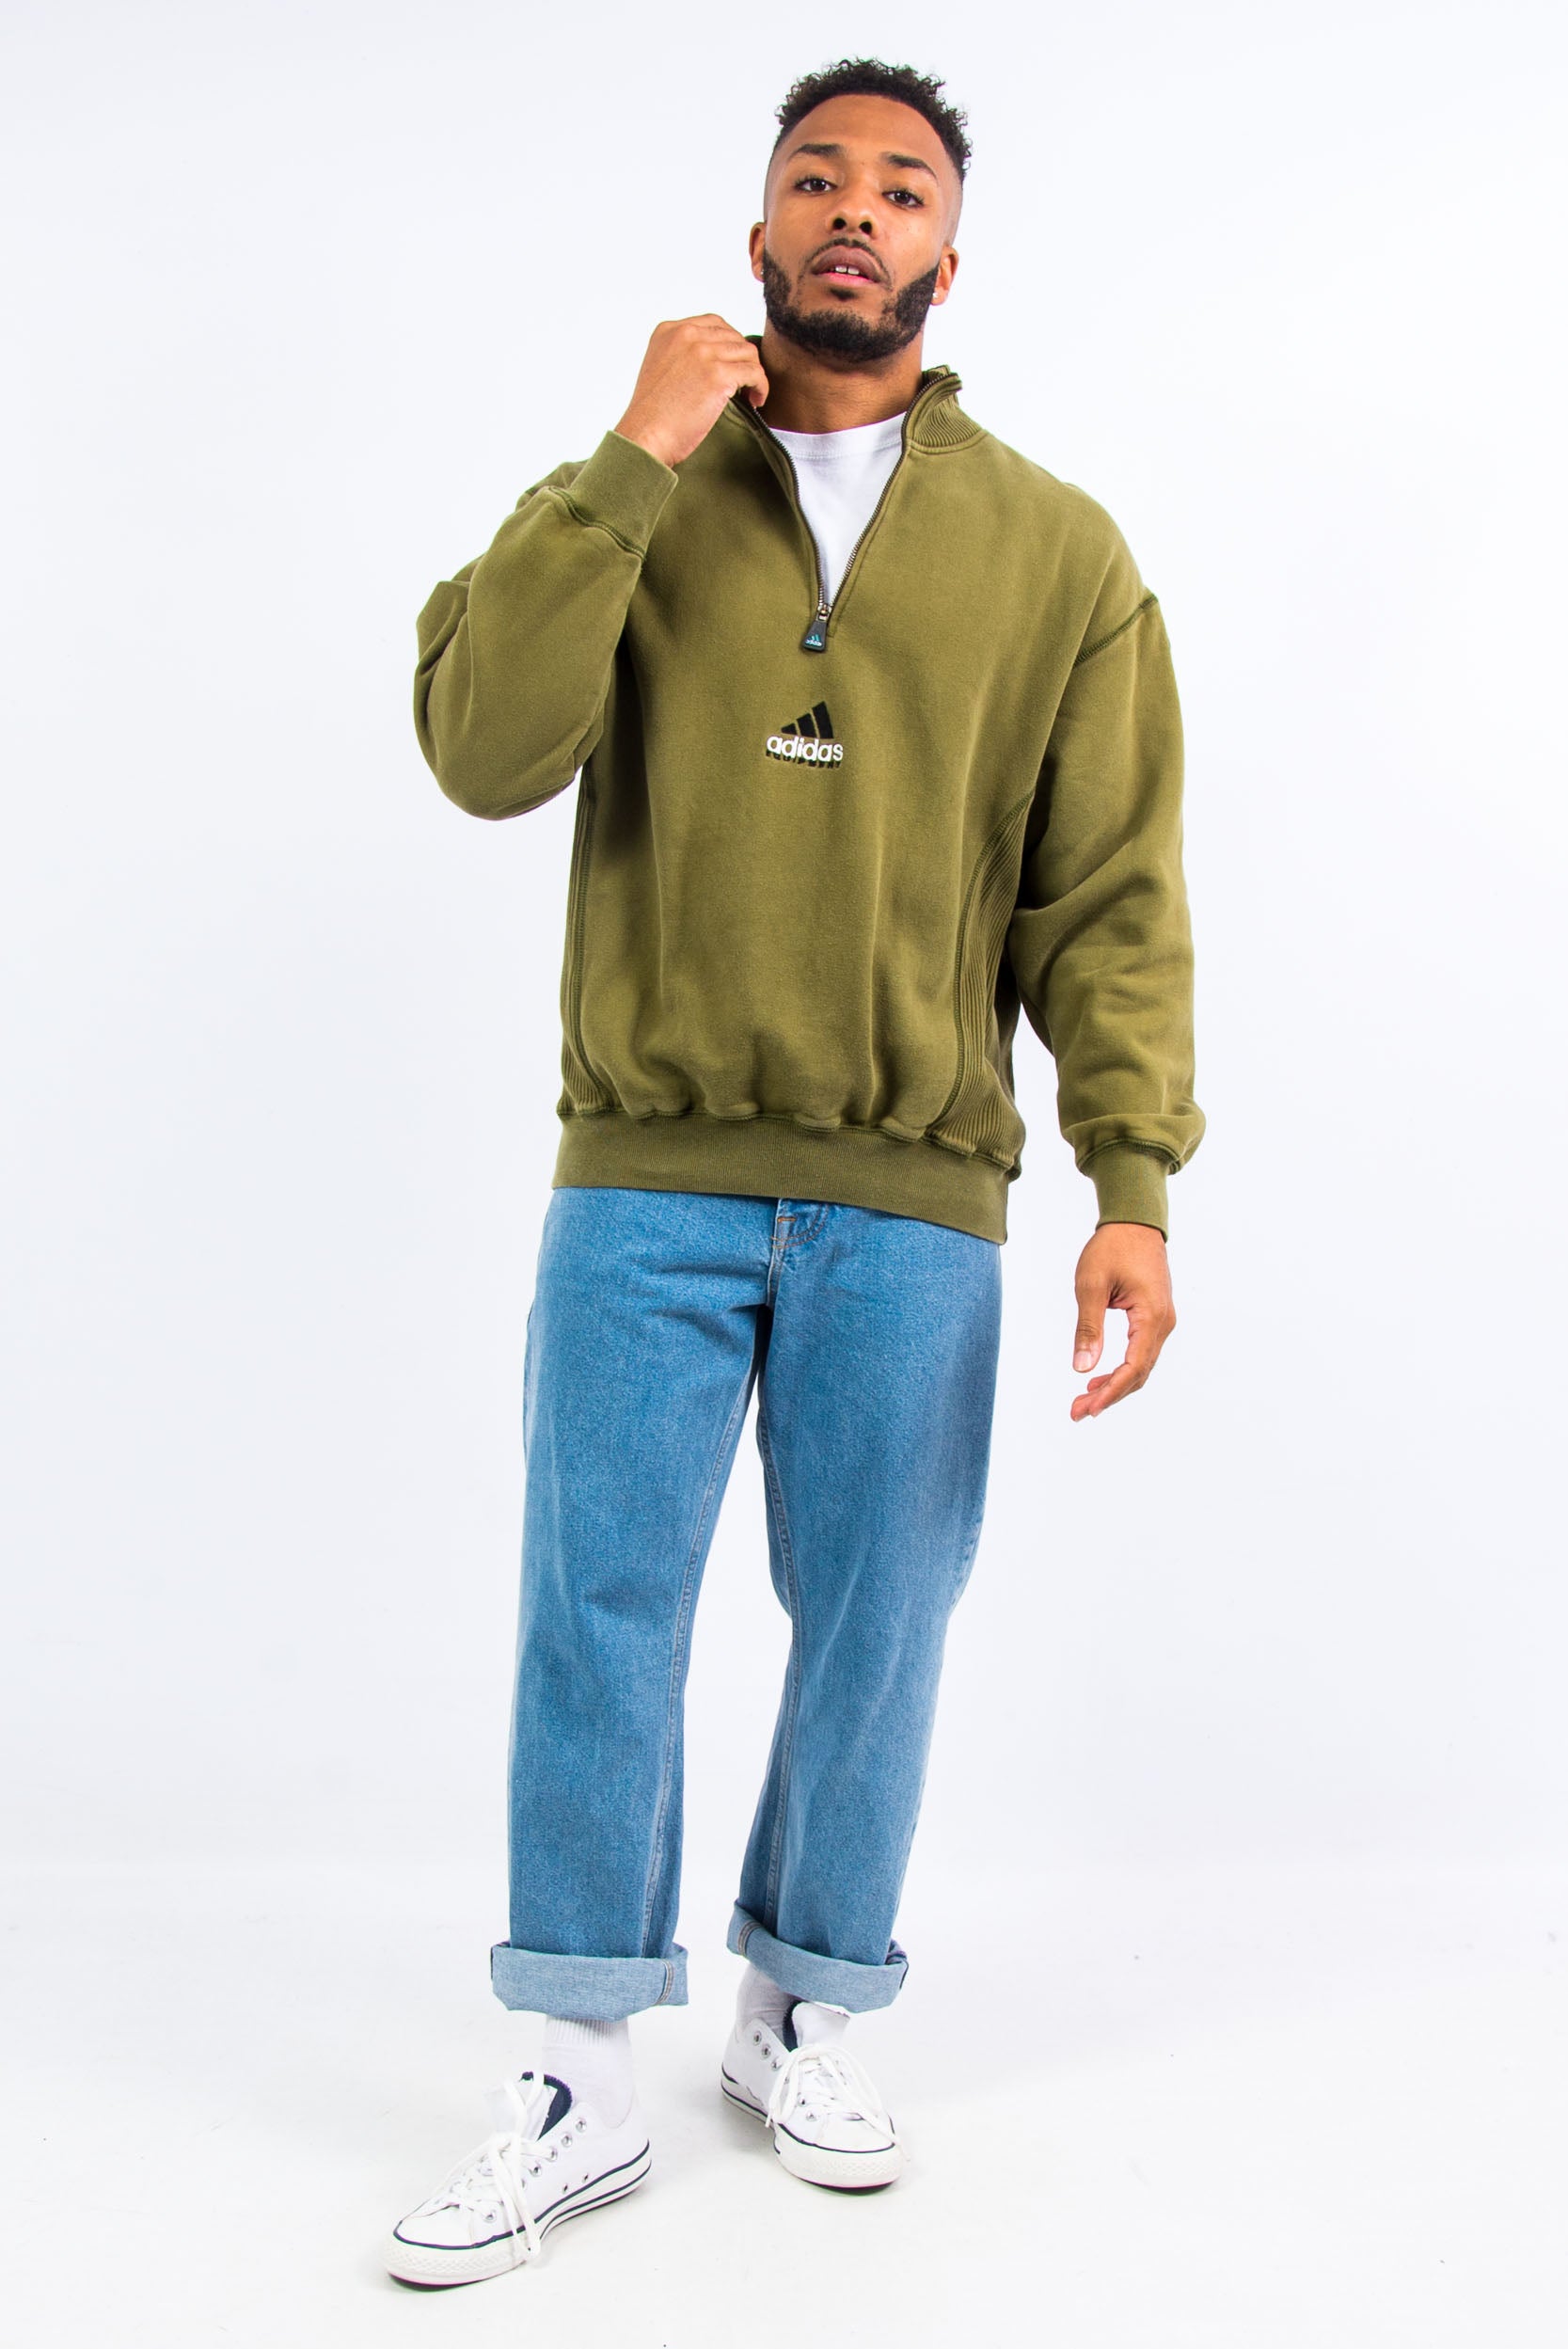 90's Adidas Equipment 1/4 Zip Sweatshirt – The Vintage Scene